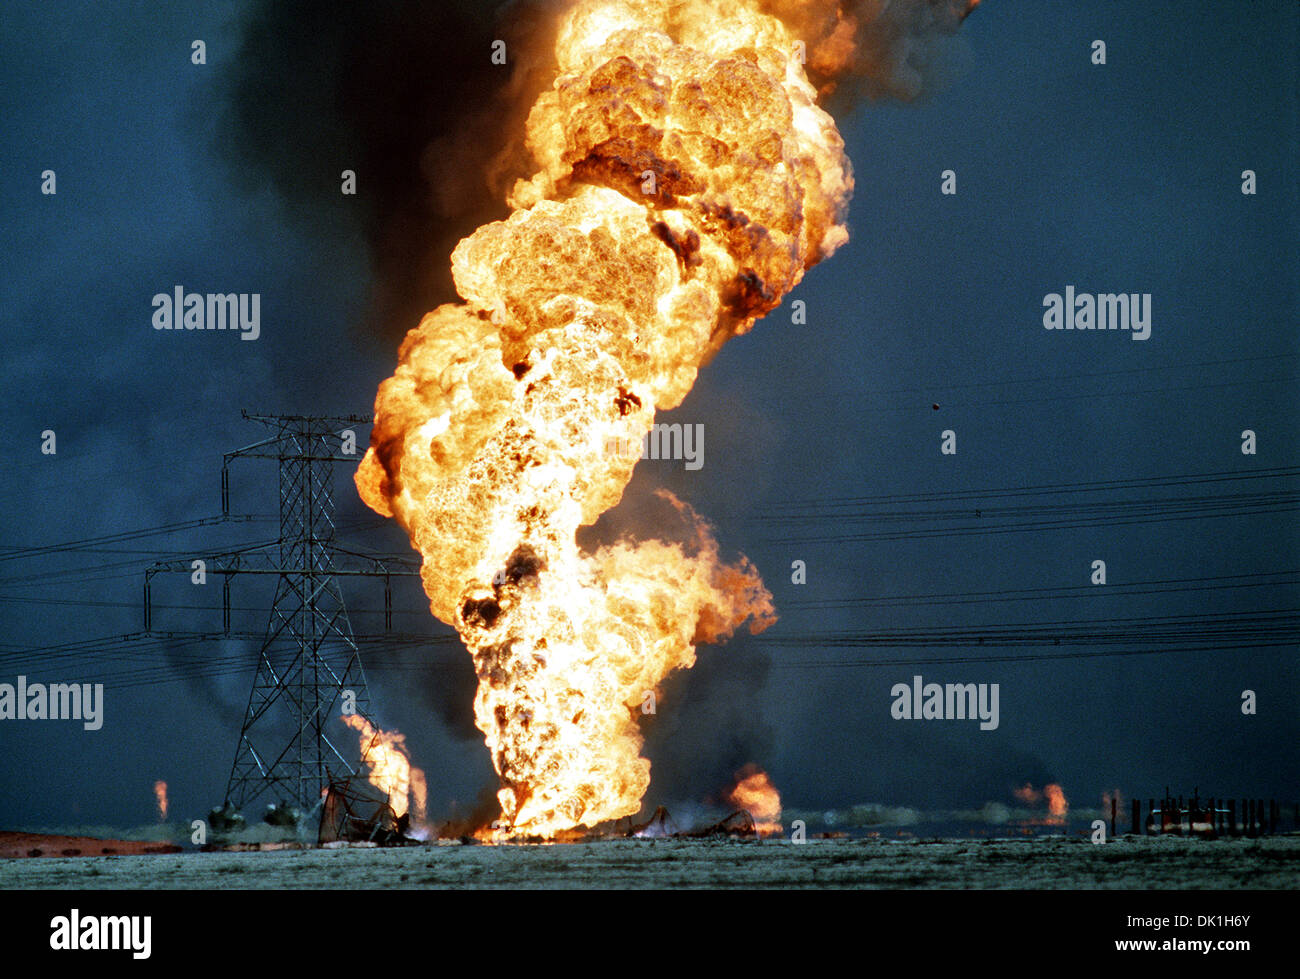 Des puits de pétrole dans la foulée de l'opération Tempête du désert, le 27 février 1991 dans les champs de pétrole, le Koweït Ahman. Les puits ont été incendiés par les forces iraquiennes avant qu'ils aient été chassés de la région par la force de la coalition. Banque D'Images